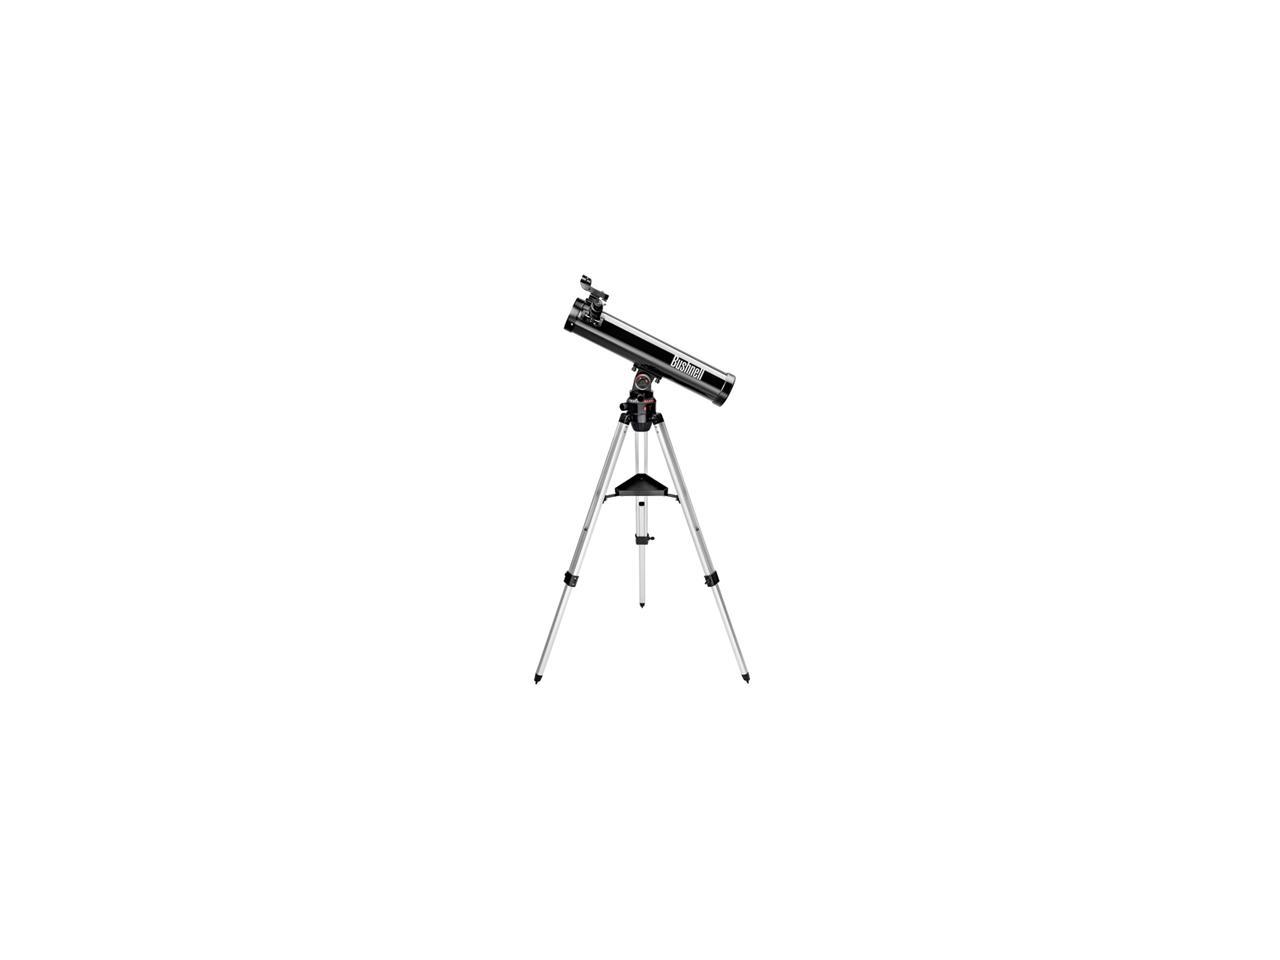 Bushnell 78 9930 Telescope Review